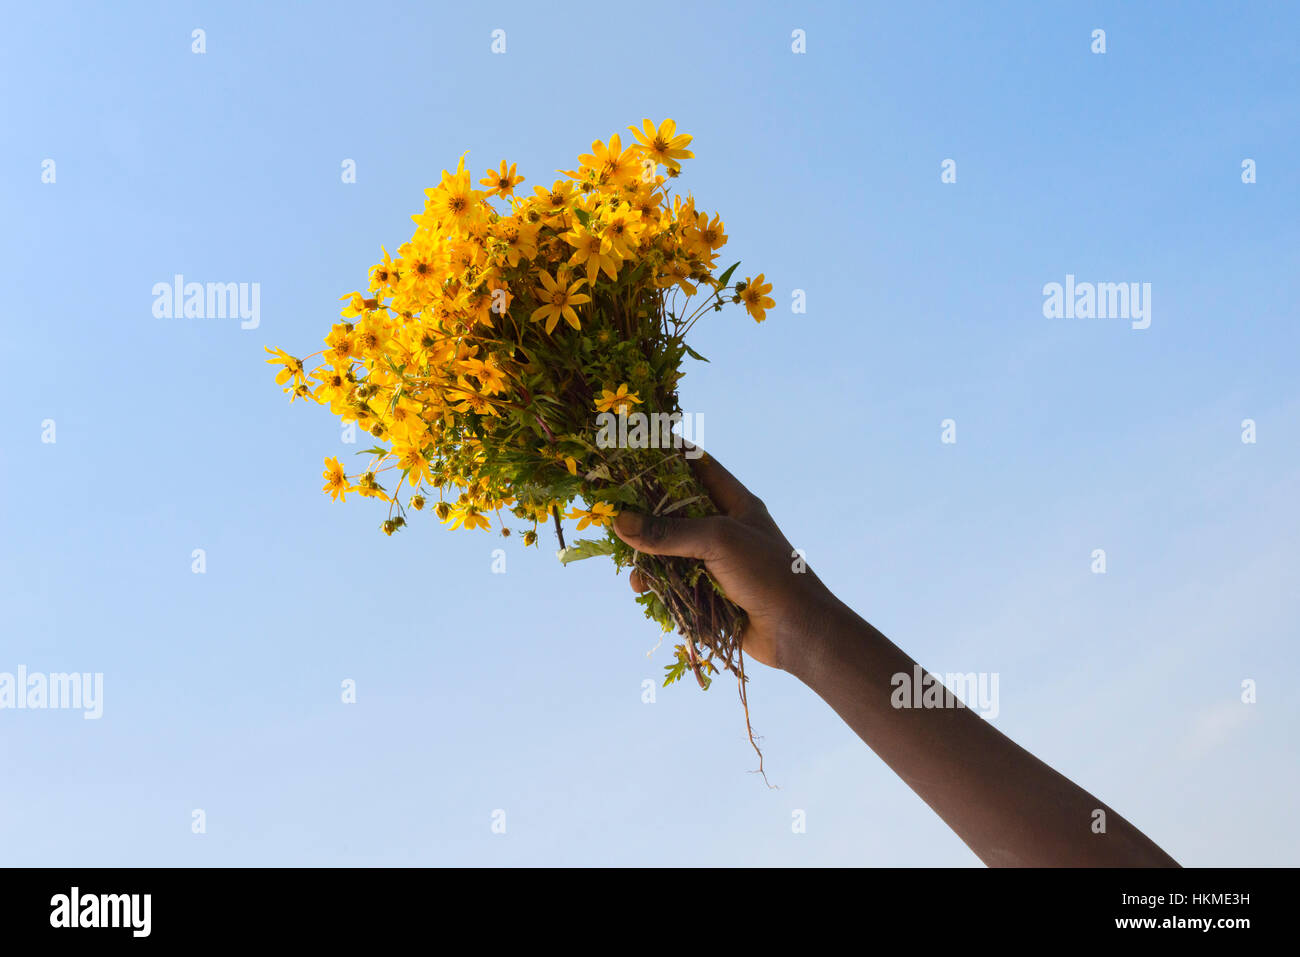 Hand holding a bundle of meskel flowers, Bahir Dar, Ethiopia Stock Photo